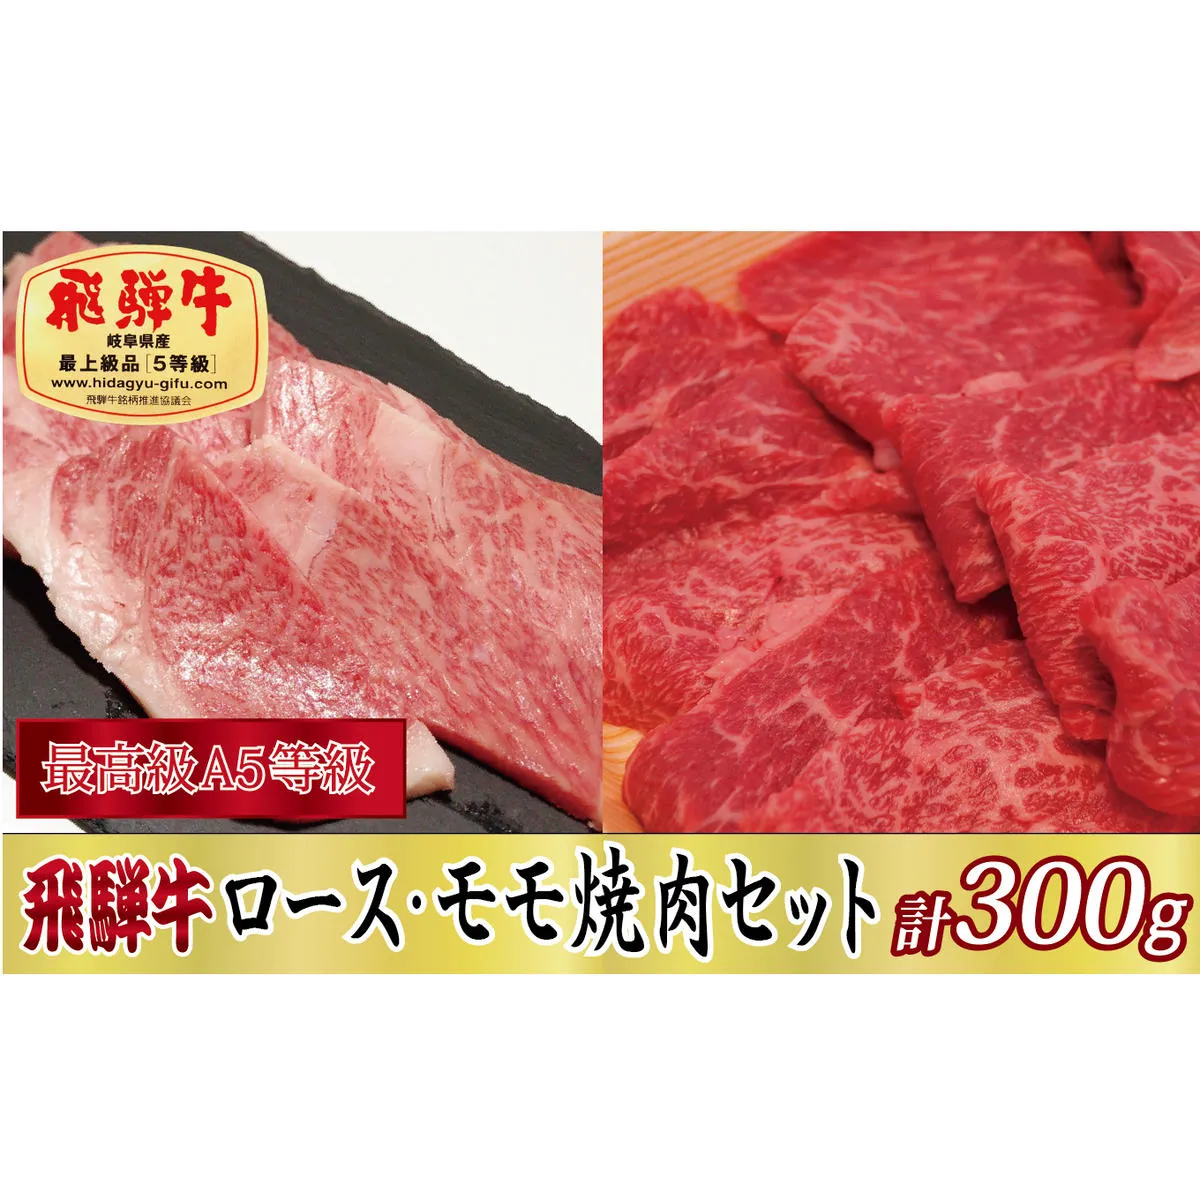 【化粧箱入り・最高級A5等級】飛騨牛ロース・モモ焼肉セット計300g